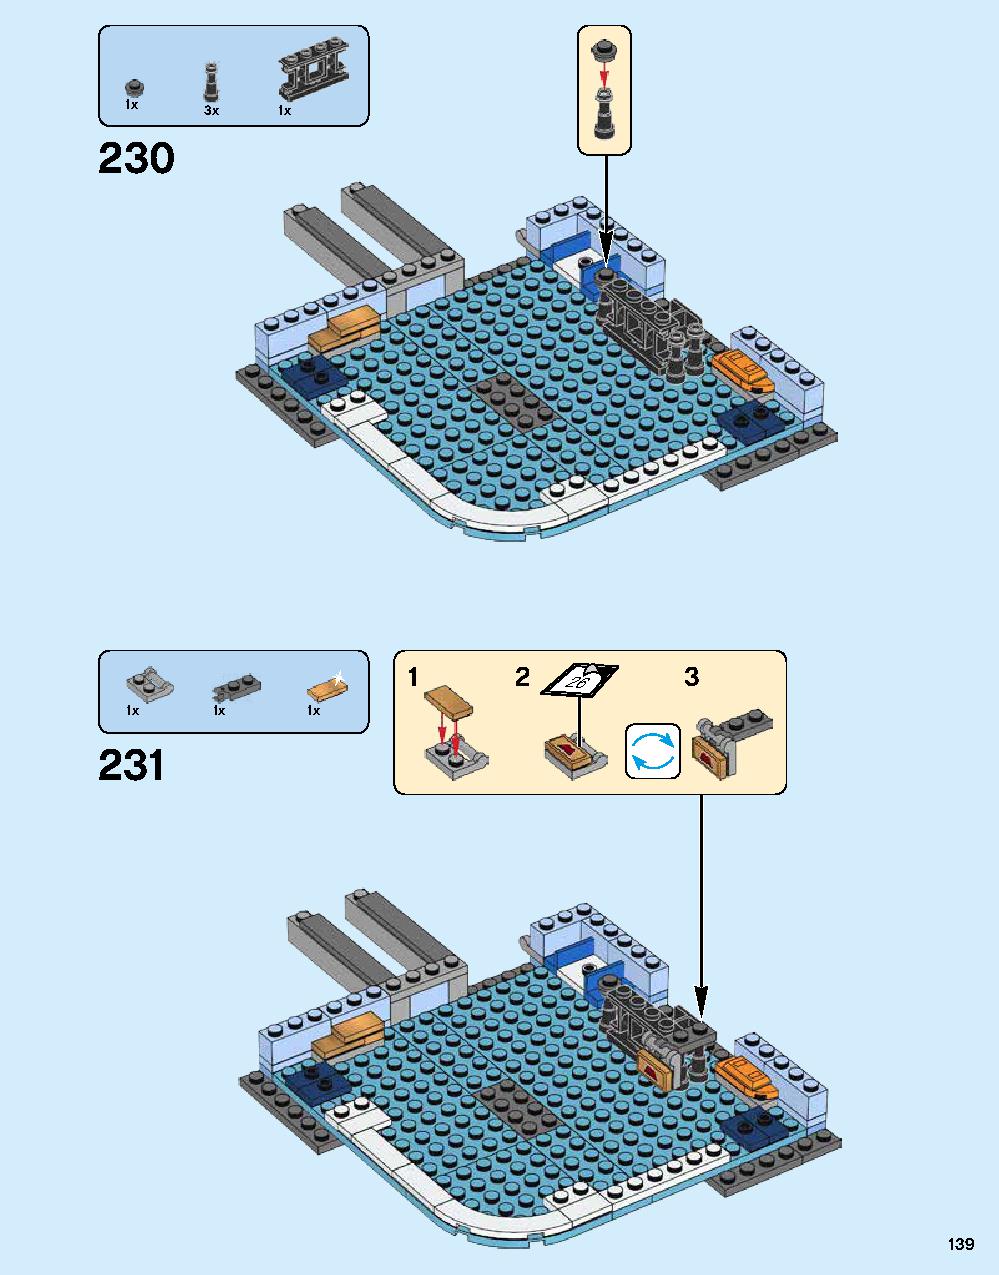 ニンジャゴー シティ 70620 レゴの商品情報 レゴの説明書・組立方法 139 page